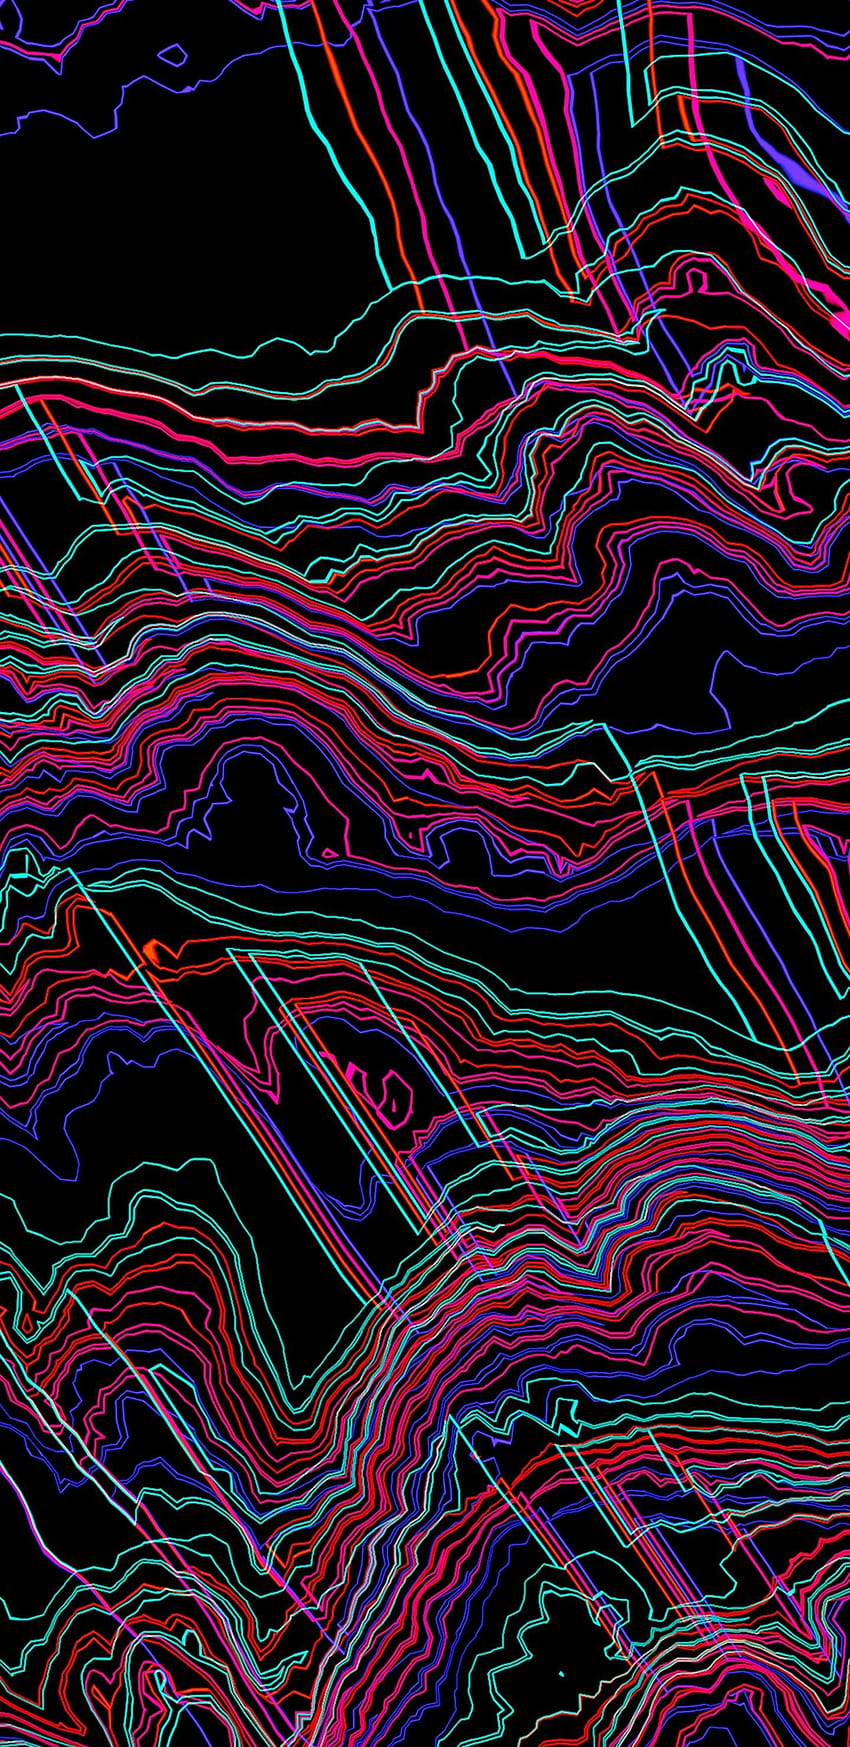 Trippy for Galaxy, samsung galaxy amoled neon HD phone wallpaper